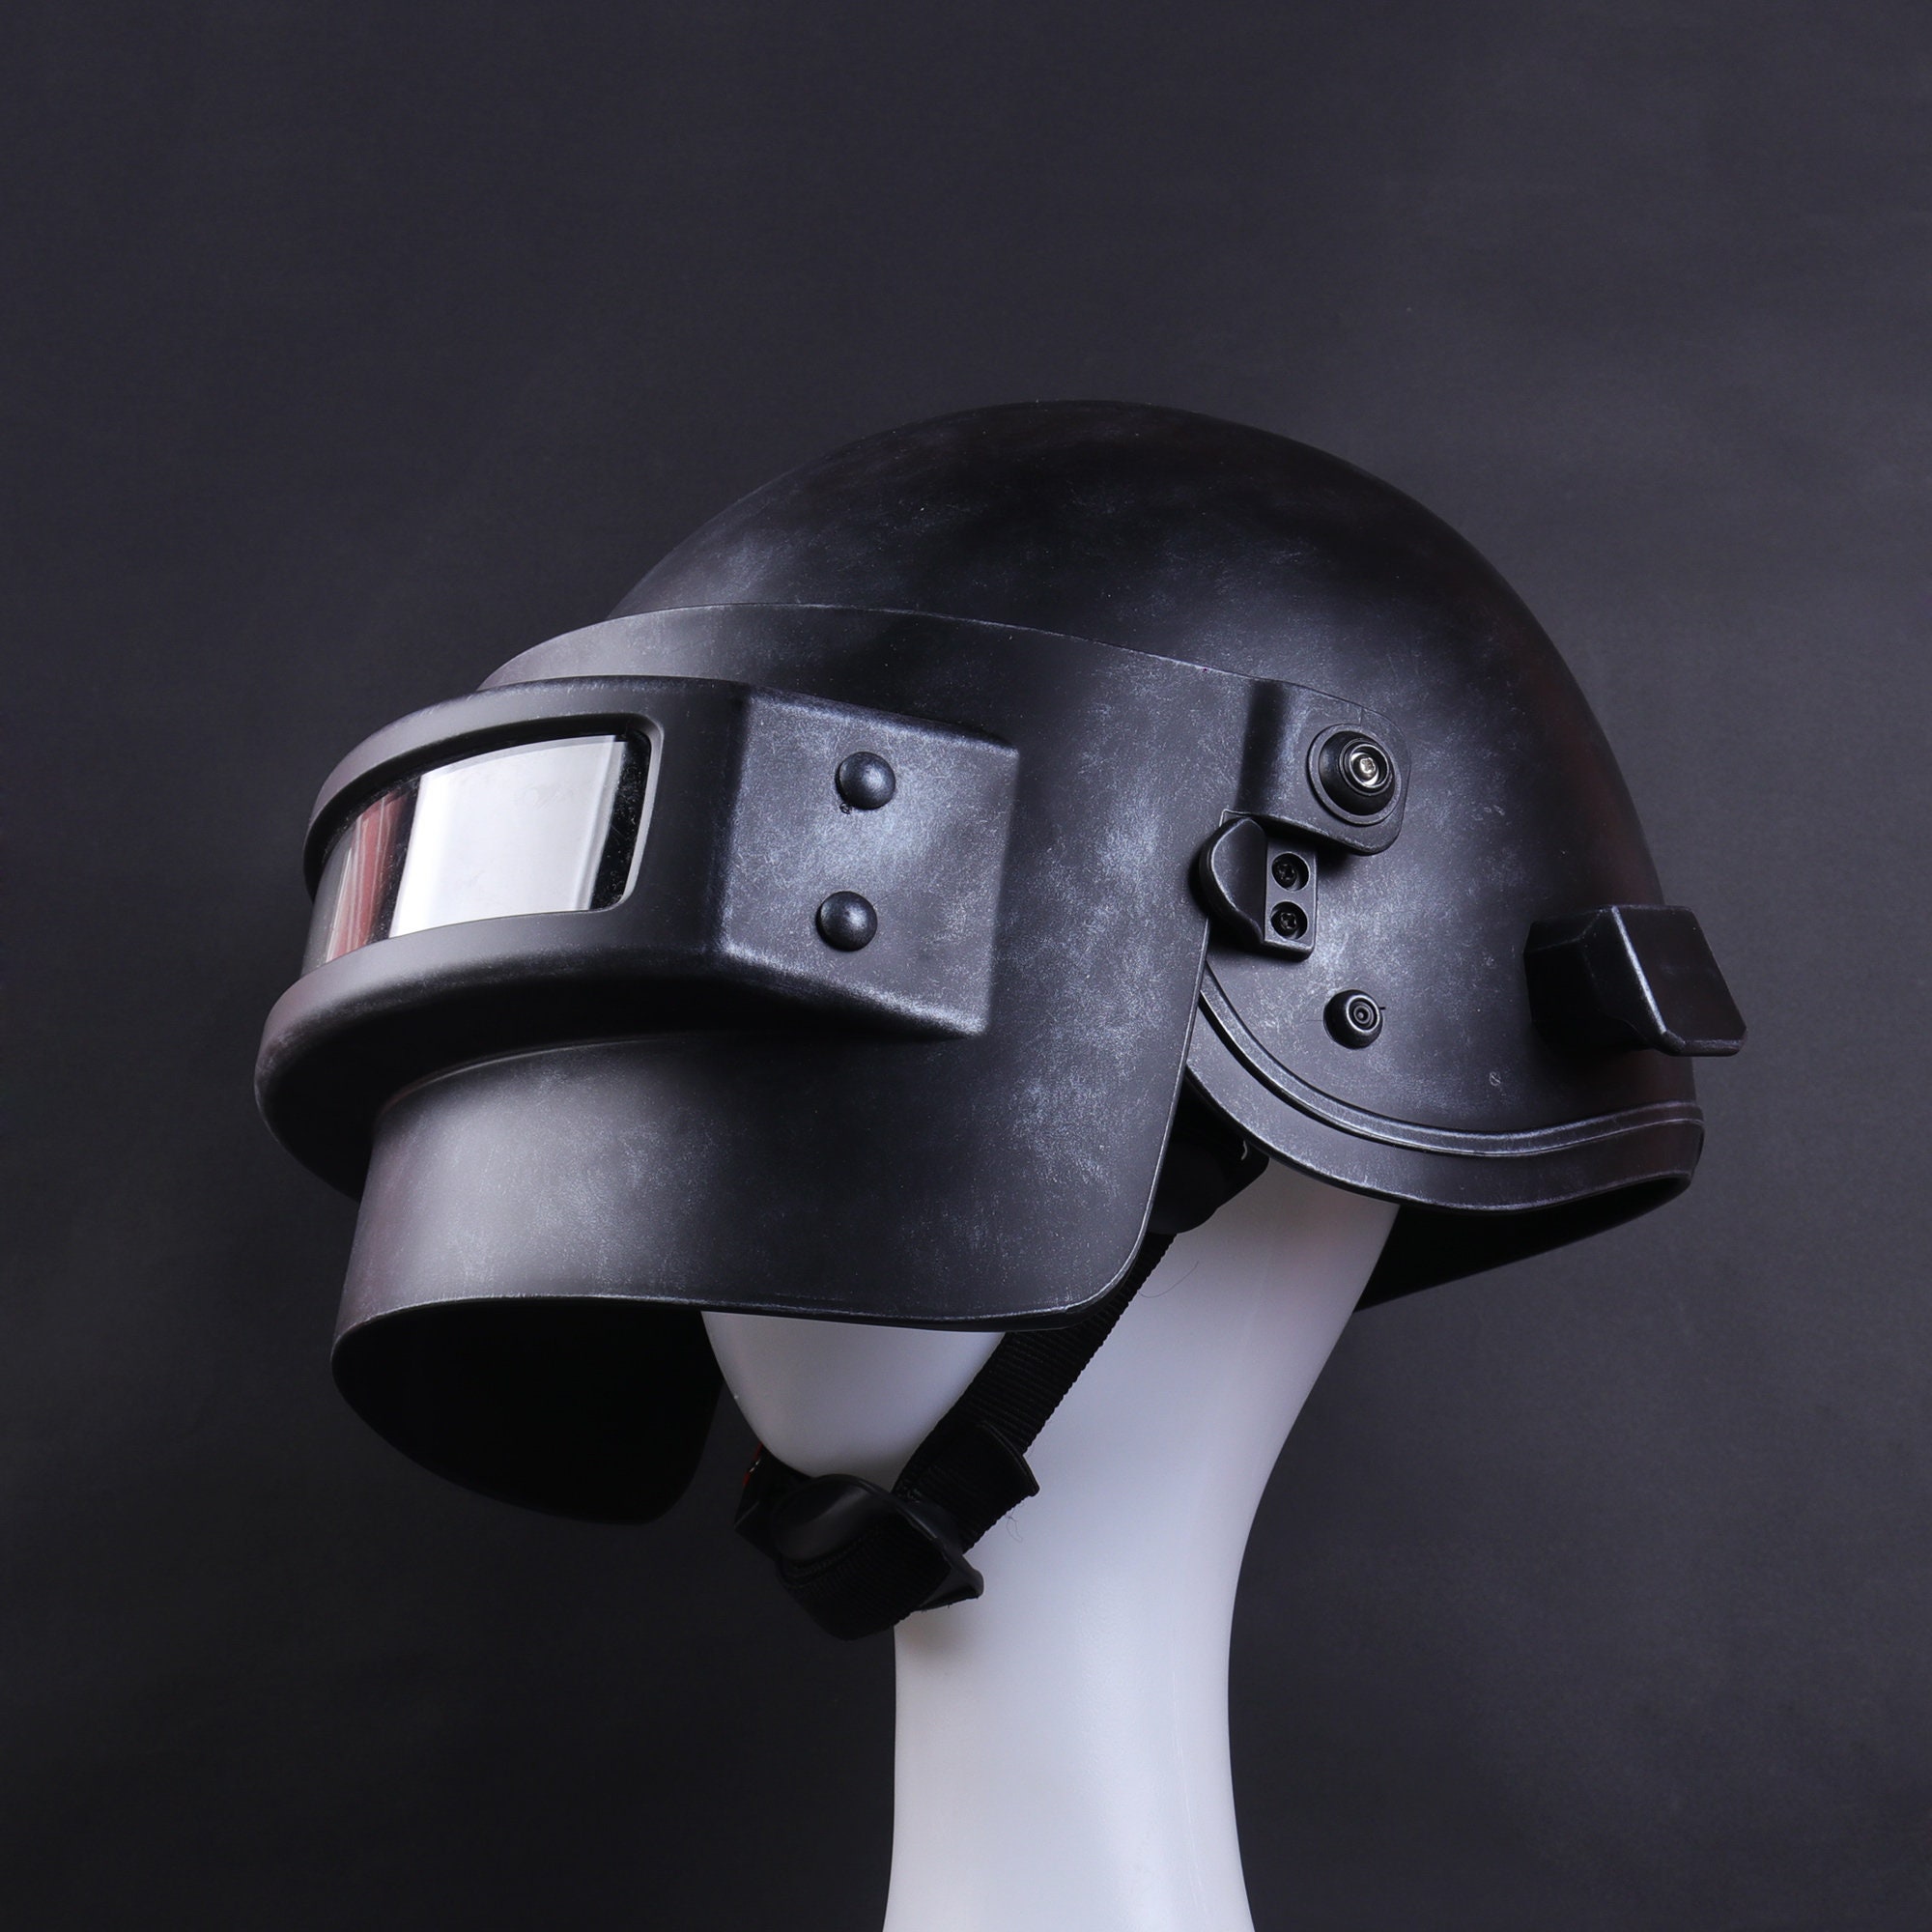 шлем 3 уровня из пубг фото 60